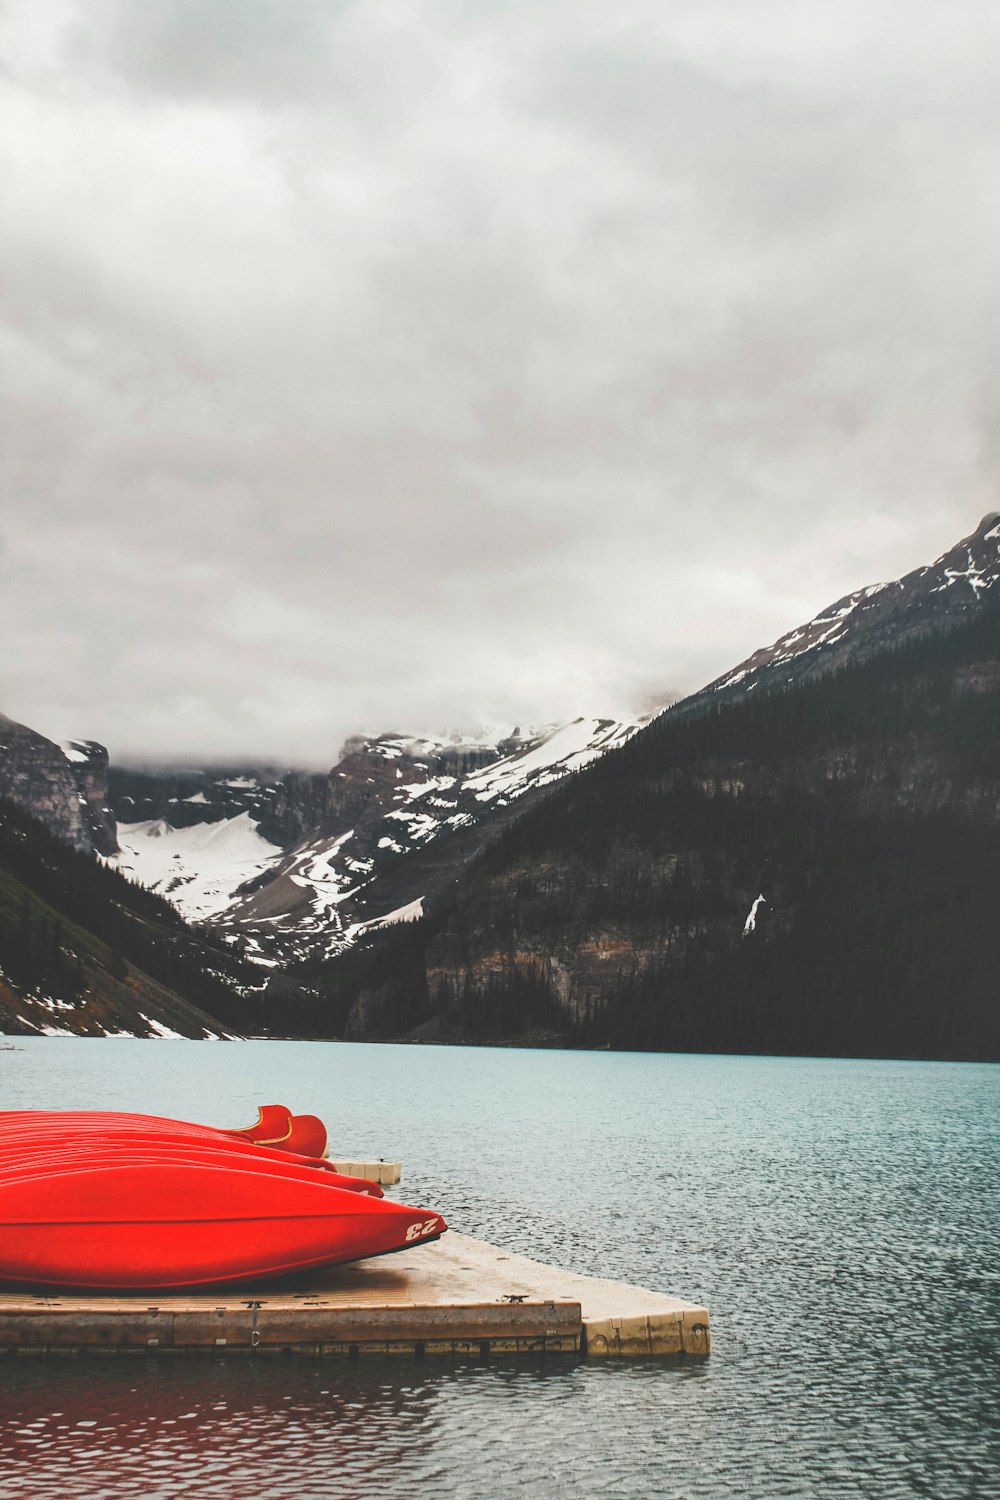 red kayak on lake near snow covered mountain during daytime